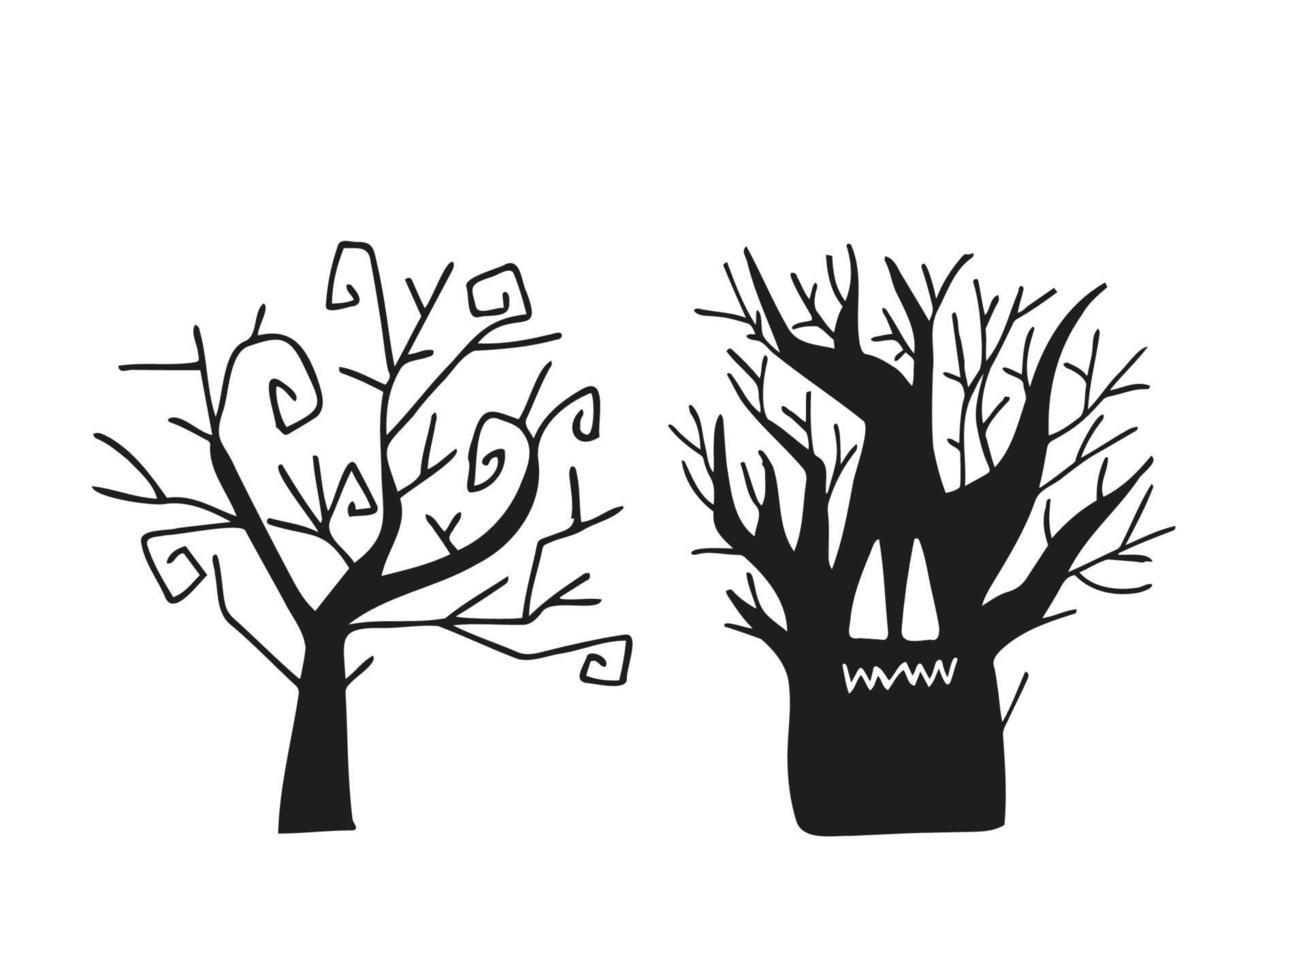 halloween 2022 - 31 octobre. une fête traditionnelle. La charité s'il-vous-plaît. illustration vectorielle dans un style doodle dessiné à la main. ensemble de silhouettes d'arbres effrayants. vecteur